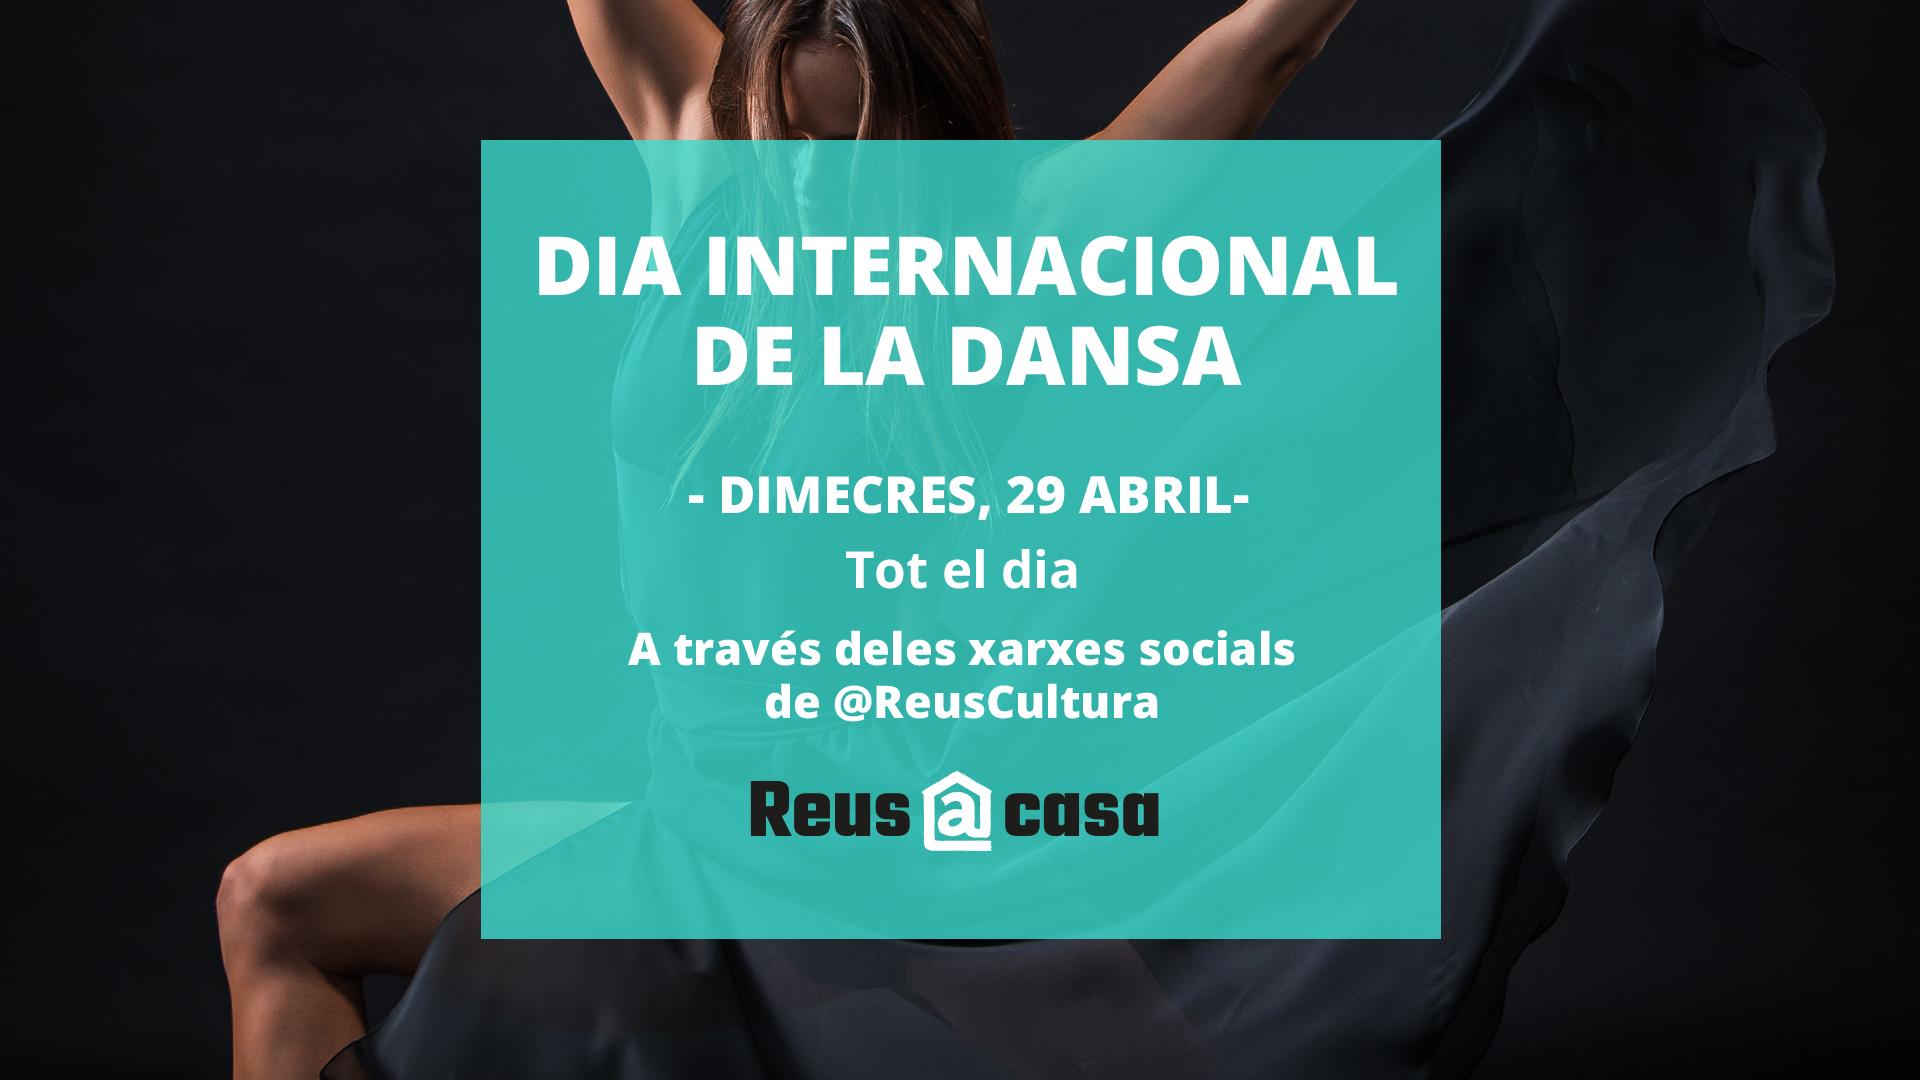 Dia Internacional de la Dansa: activitats durant tot el dia